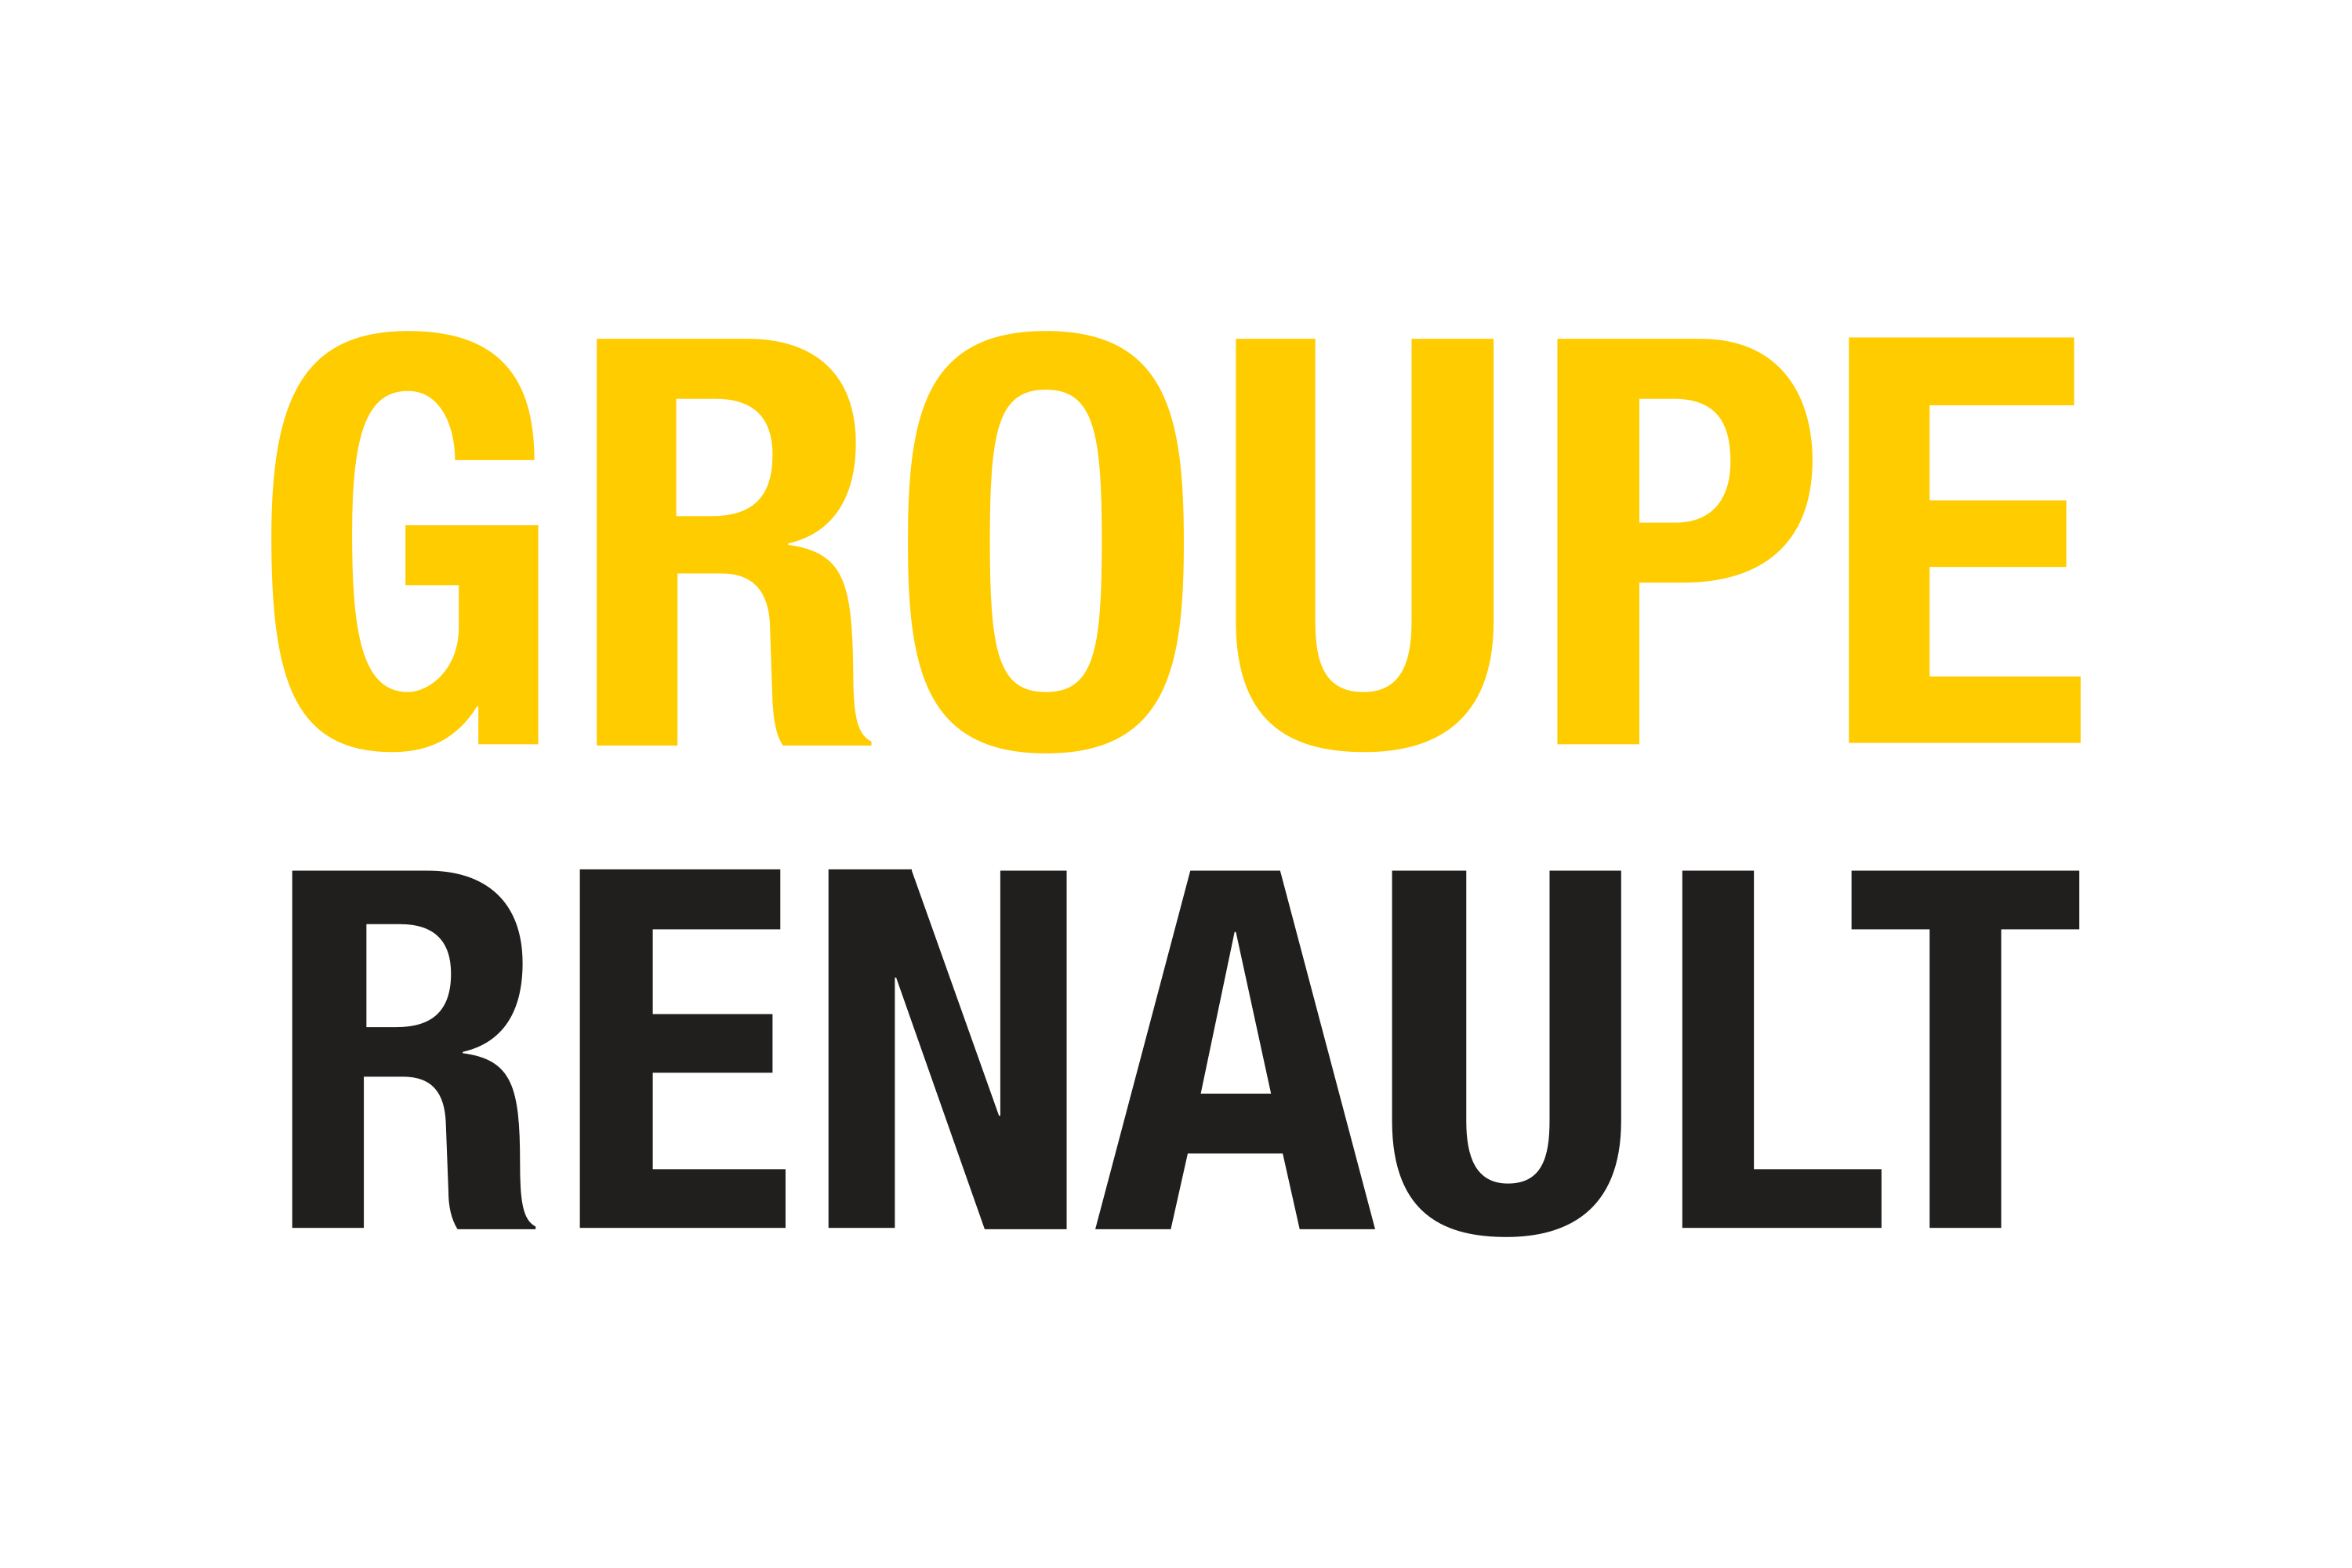 Renault group. Groupe Renault. Renault Group логотип. Группа Рено Логан. Техническое обслуживание Рено лого.